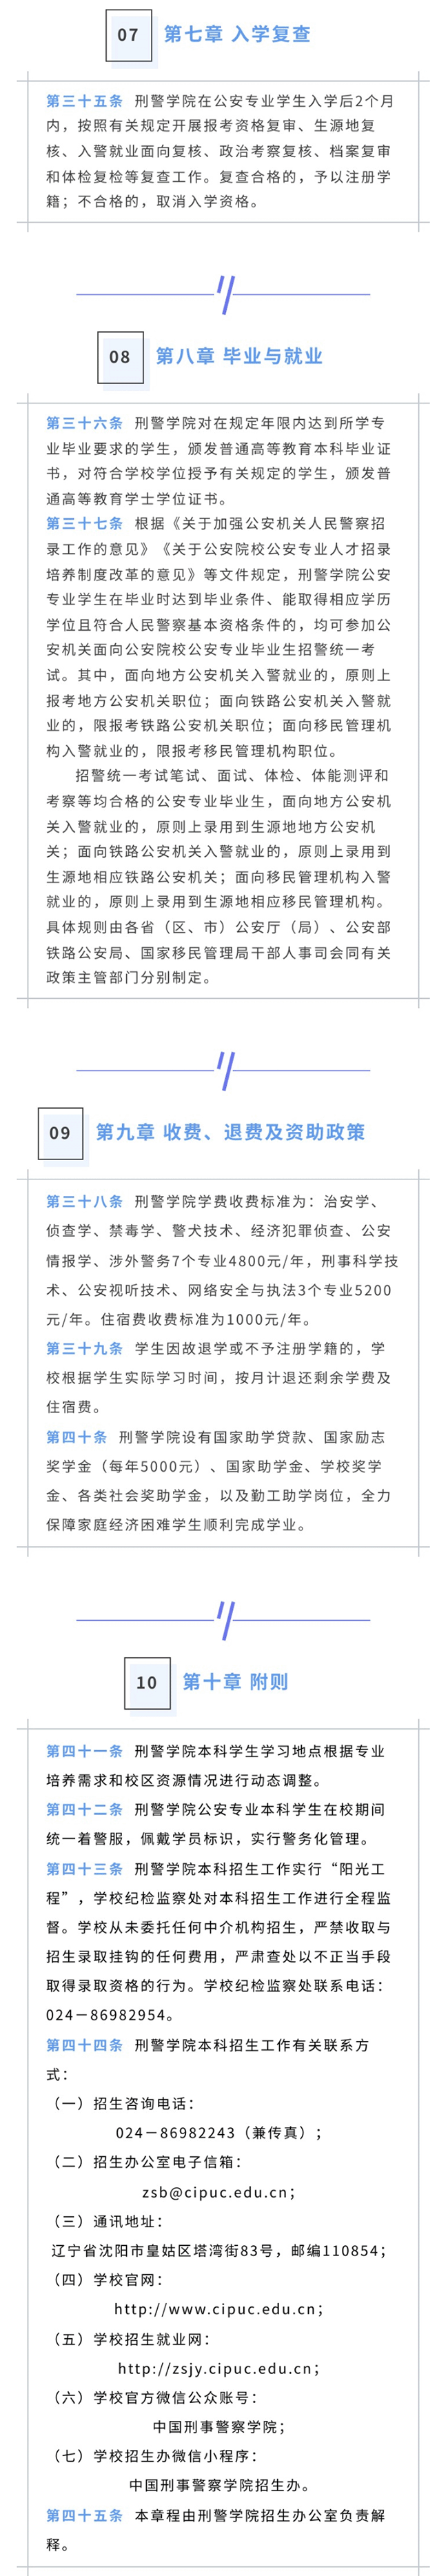 2023年中国刑事警察学院招生简章